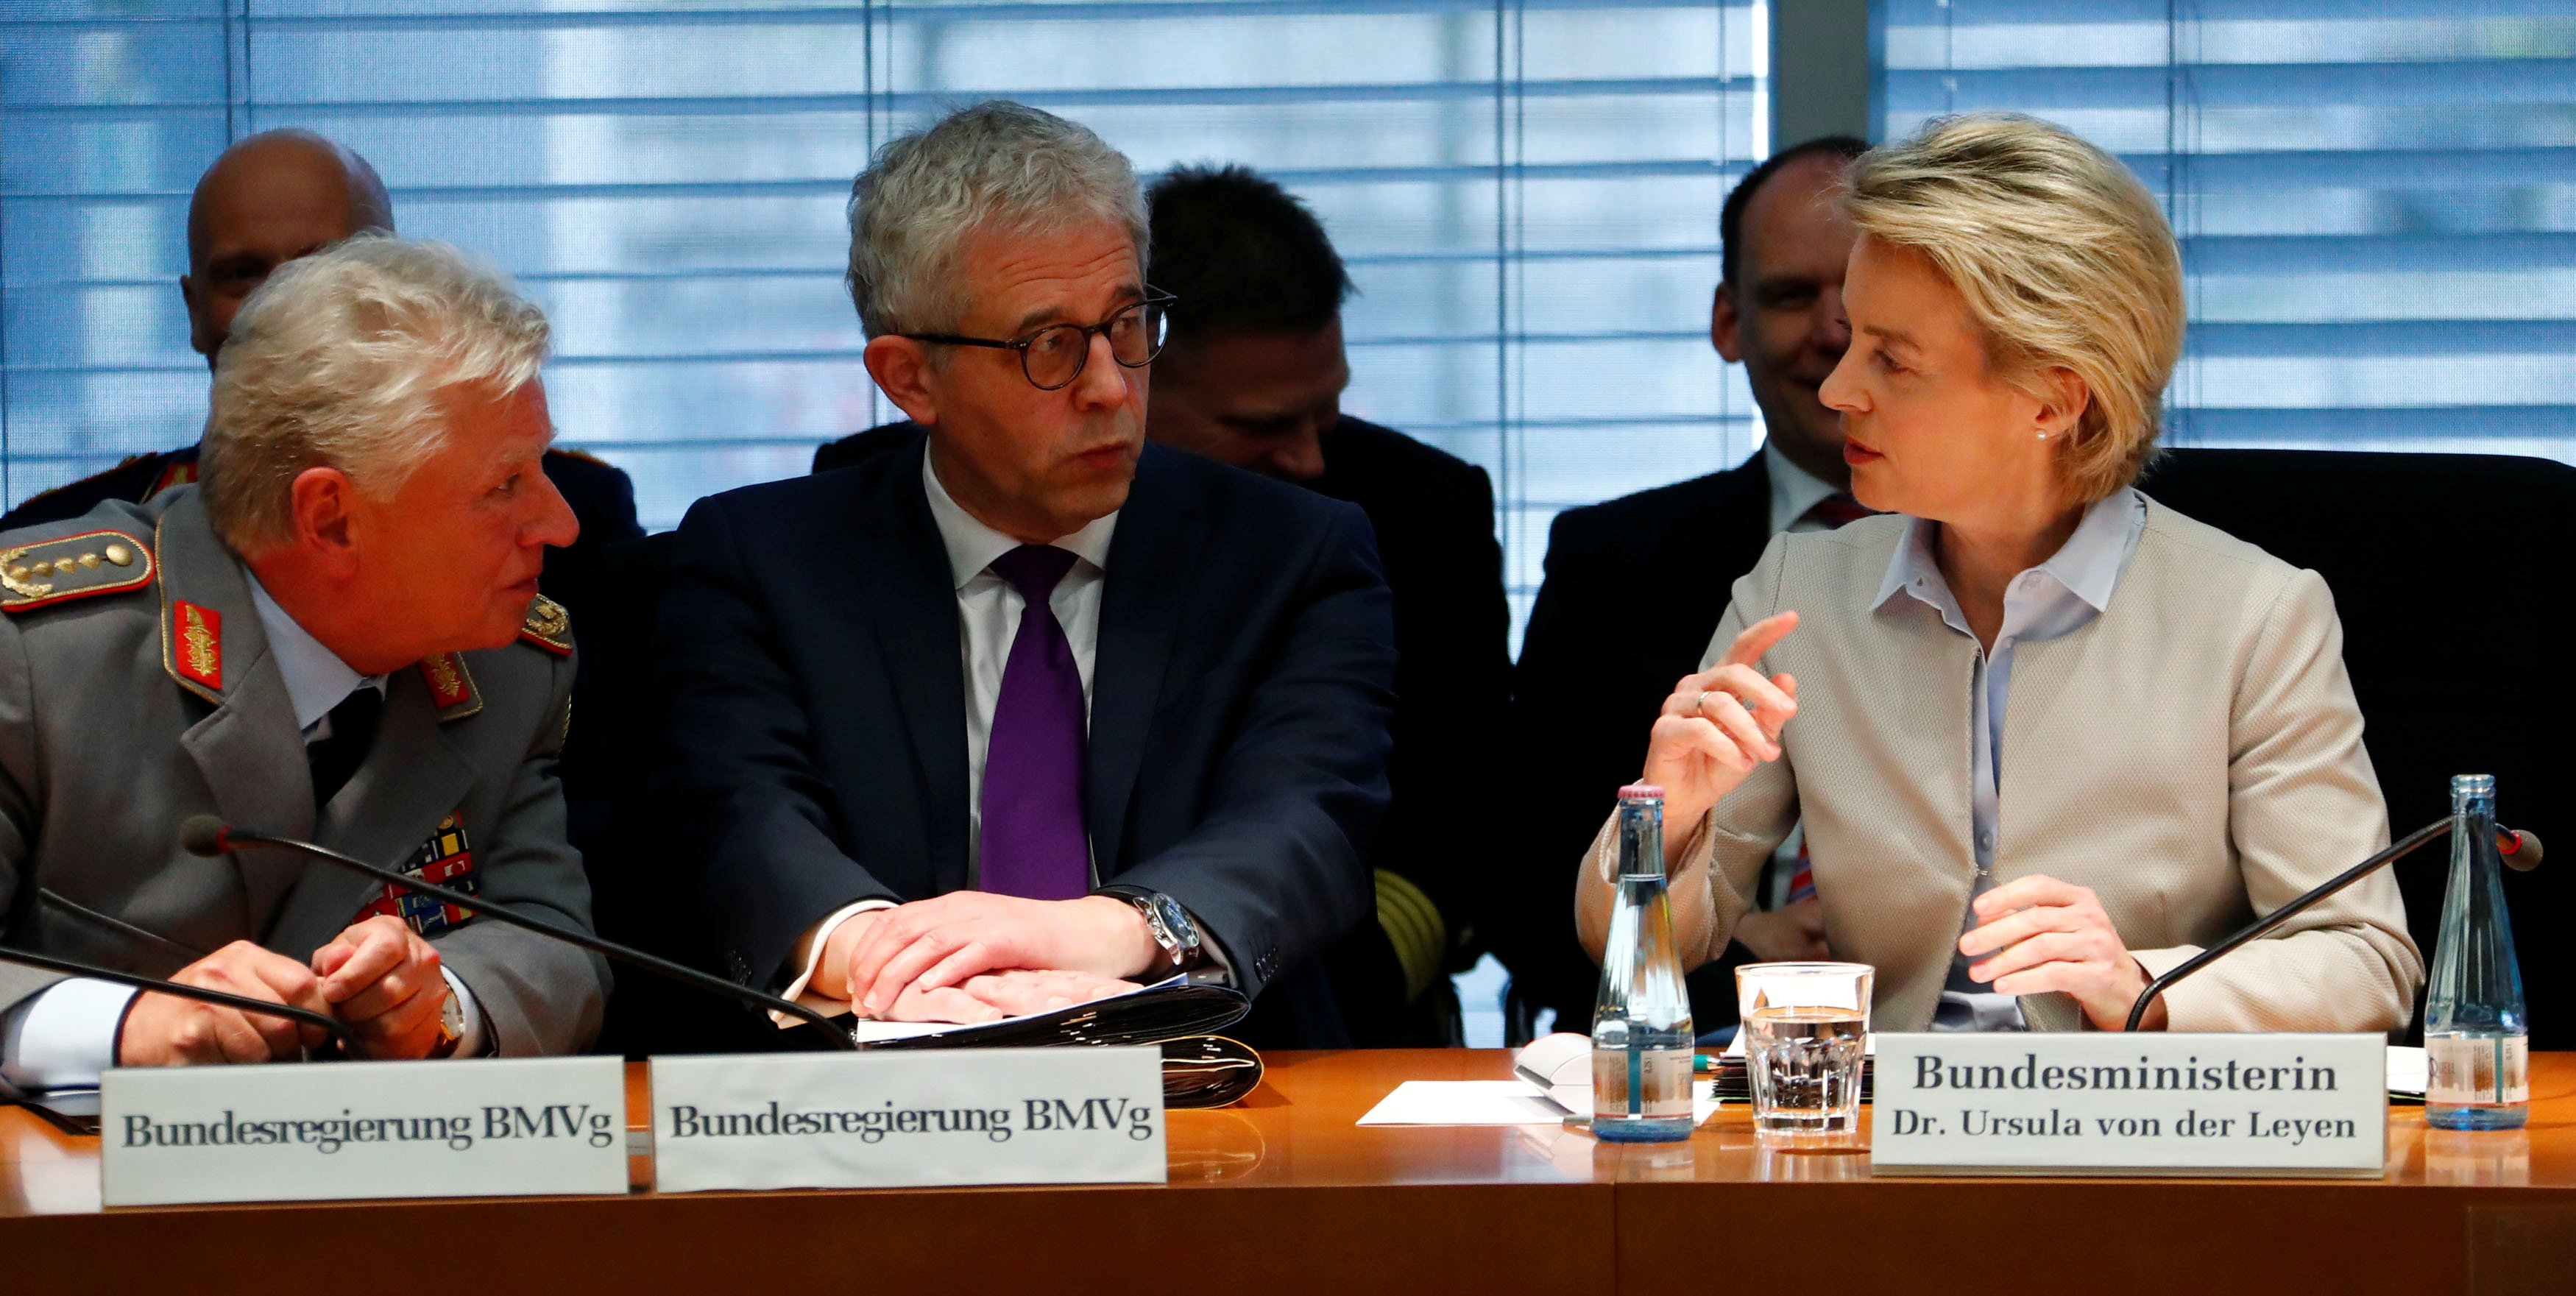 وزيرة الدفاع الألمانية أورسولا فون دير ليين تشارك فى أحد الاجتماعات